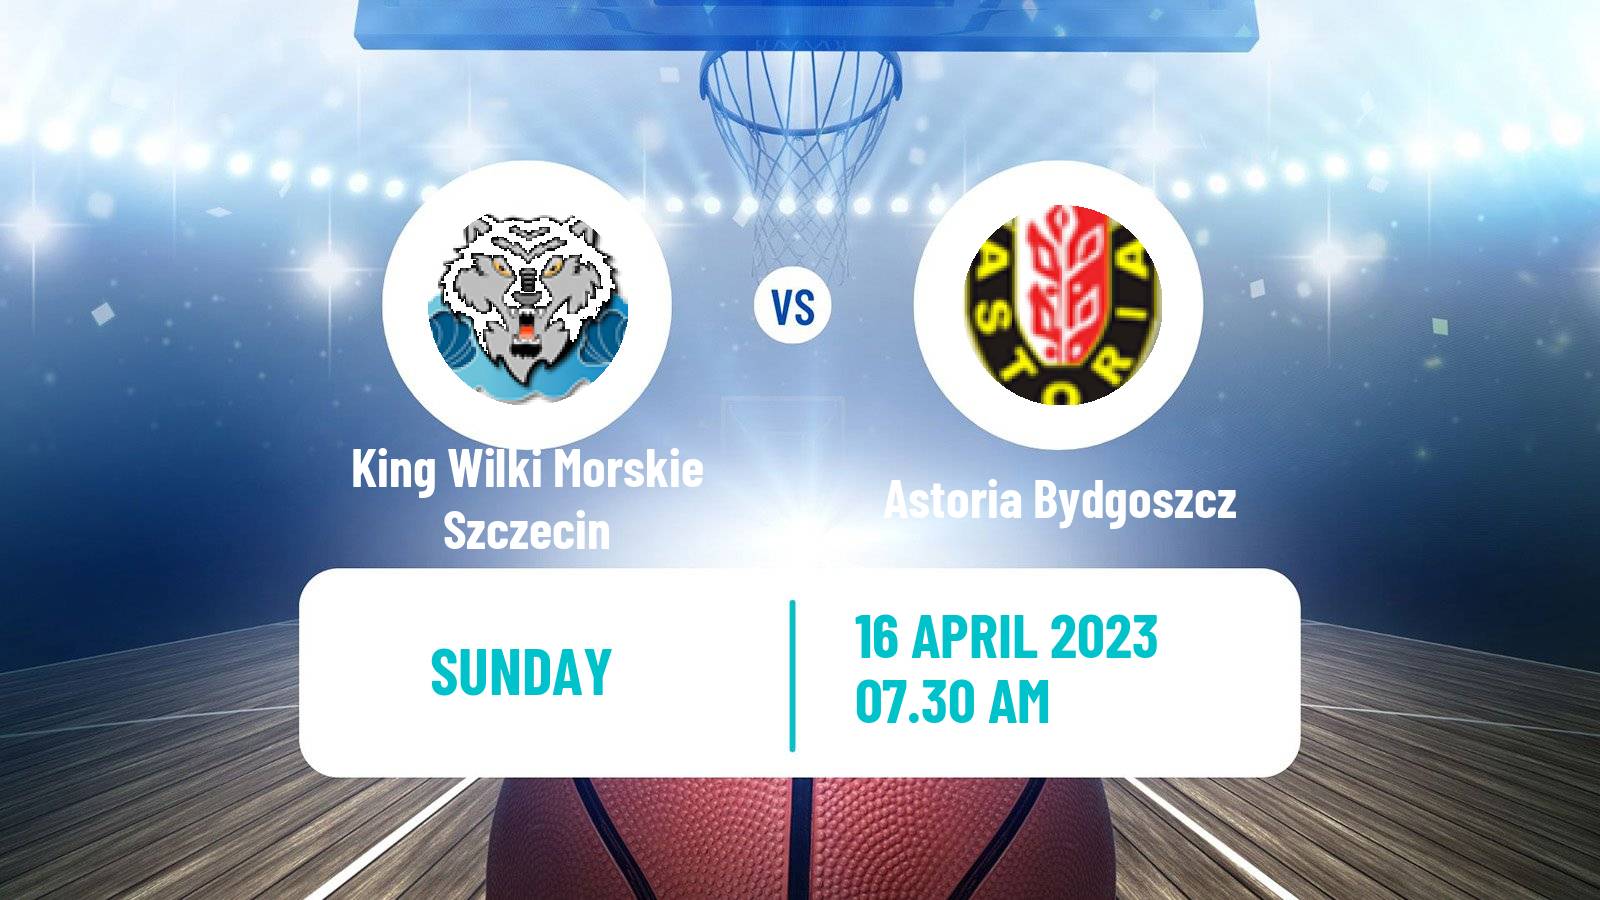 Basketball Polish Basket Liga King Wilki Morskie Szczecin - Astoria Bydgoszcz